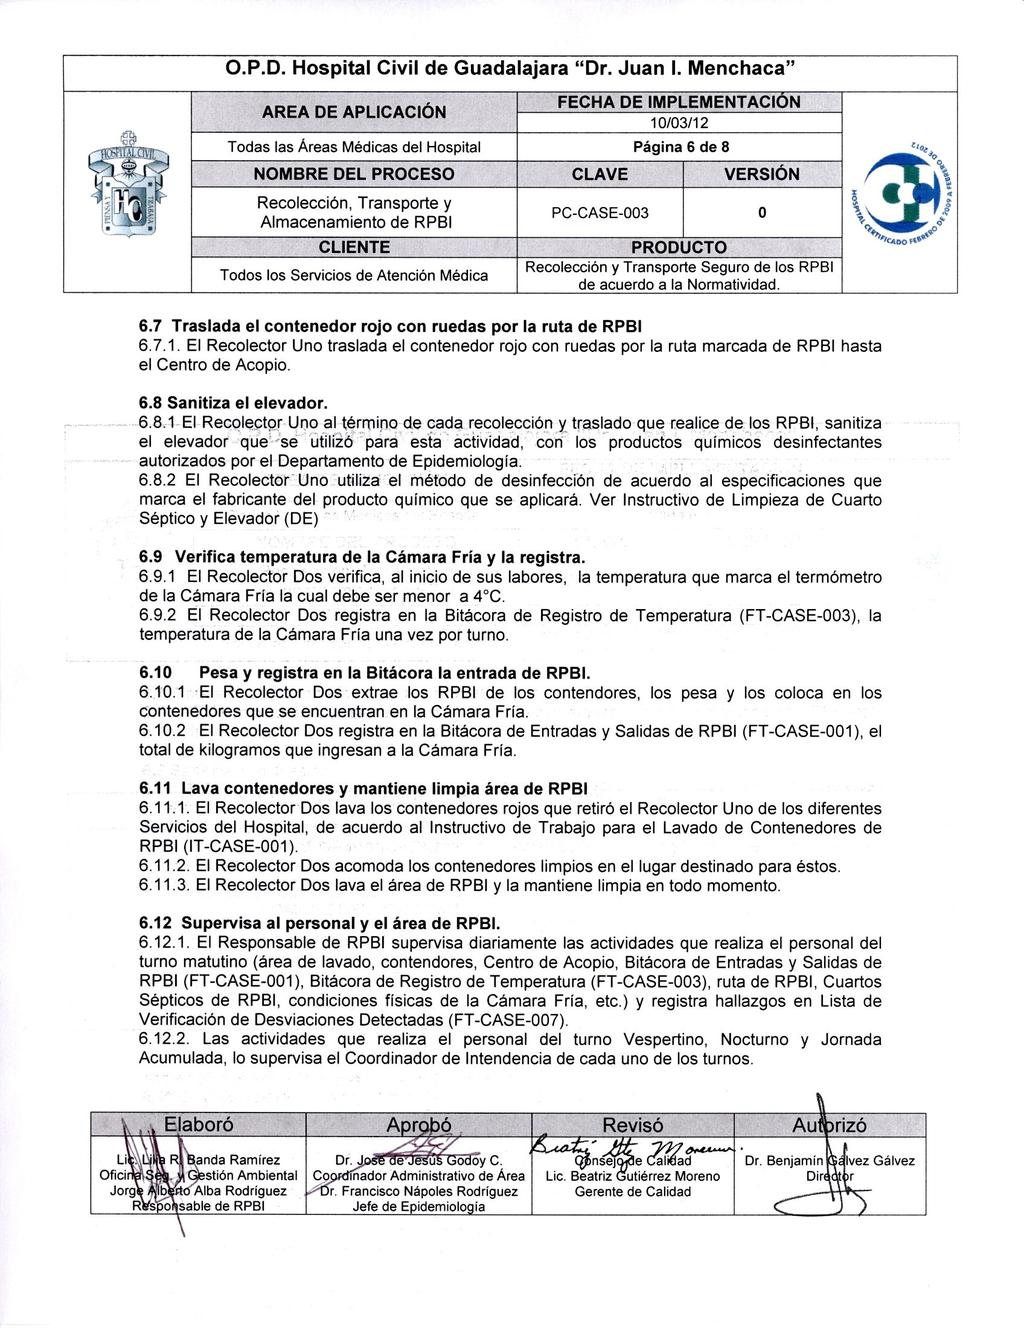 rizó 0.P.D. Hospital Civil de Guadalajara "Dr. Juan I. Menchaca" 10/03/12 1"..A.